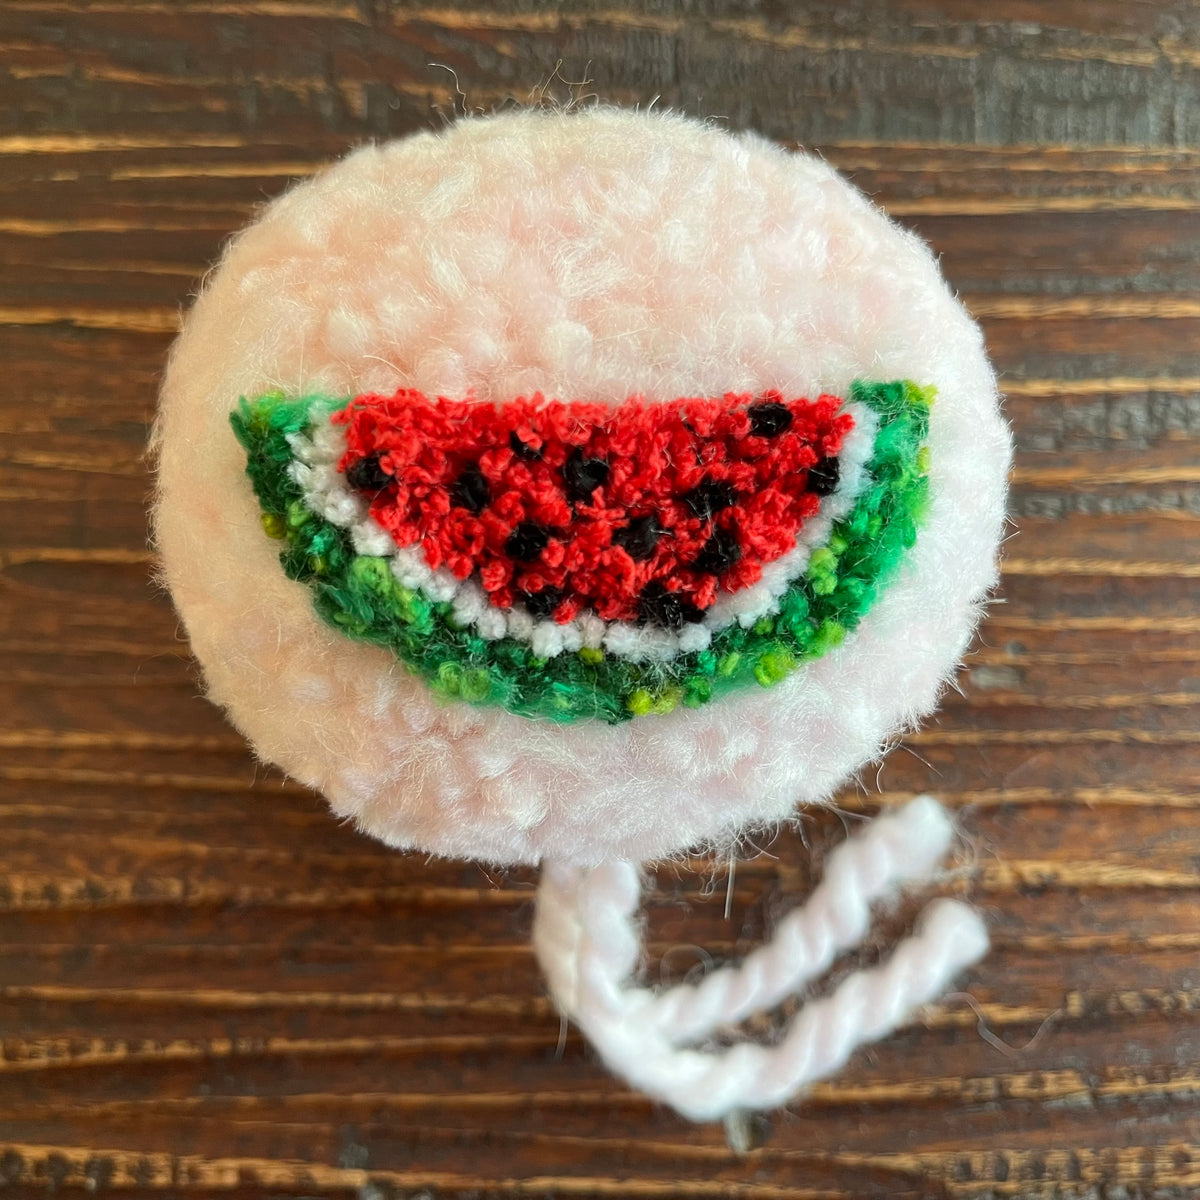 Strawberry Pom Art Tutorial – flynnknit